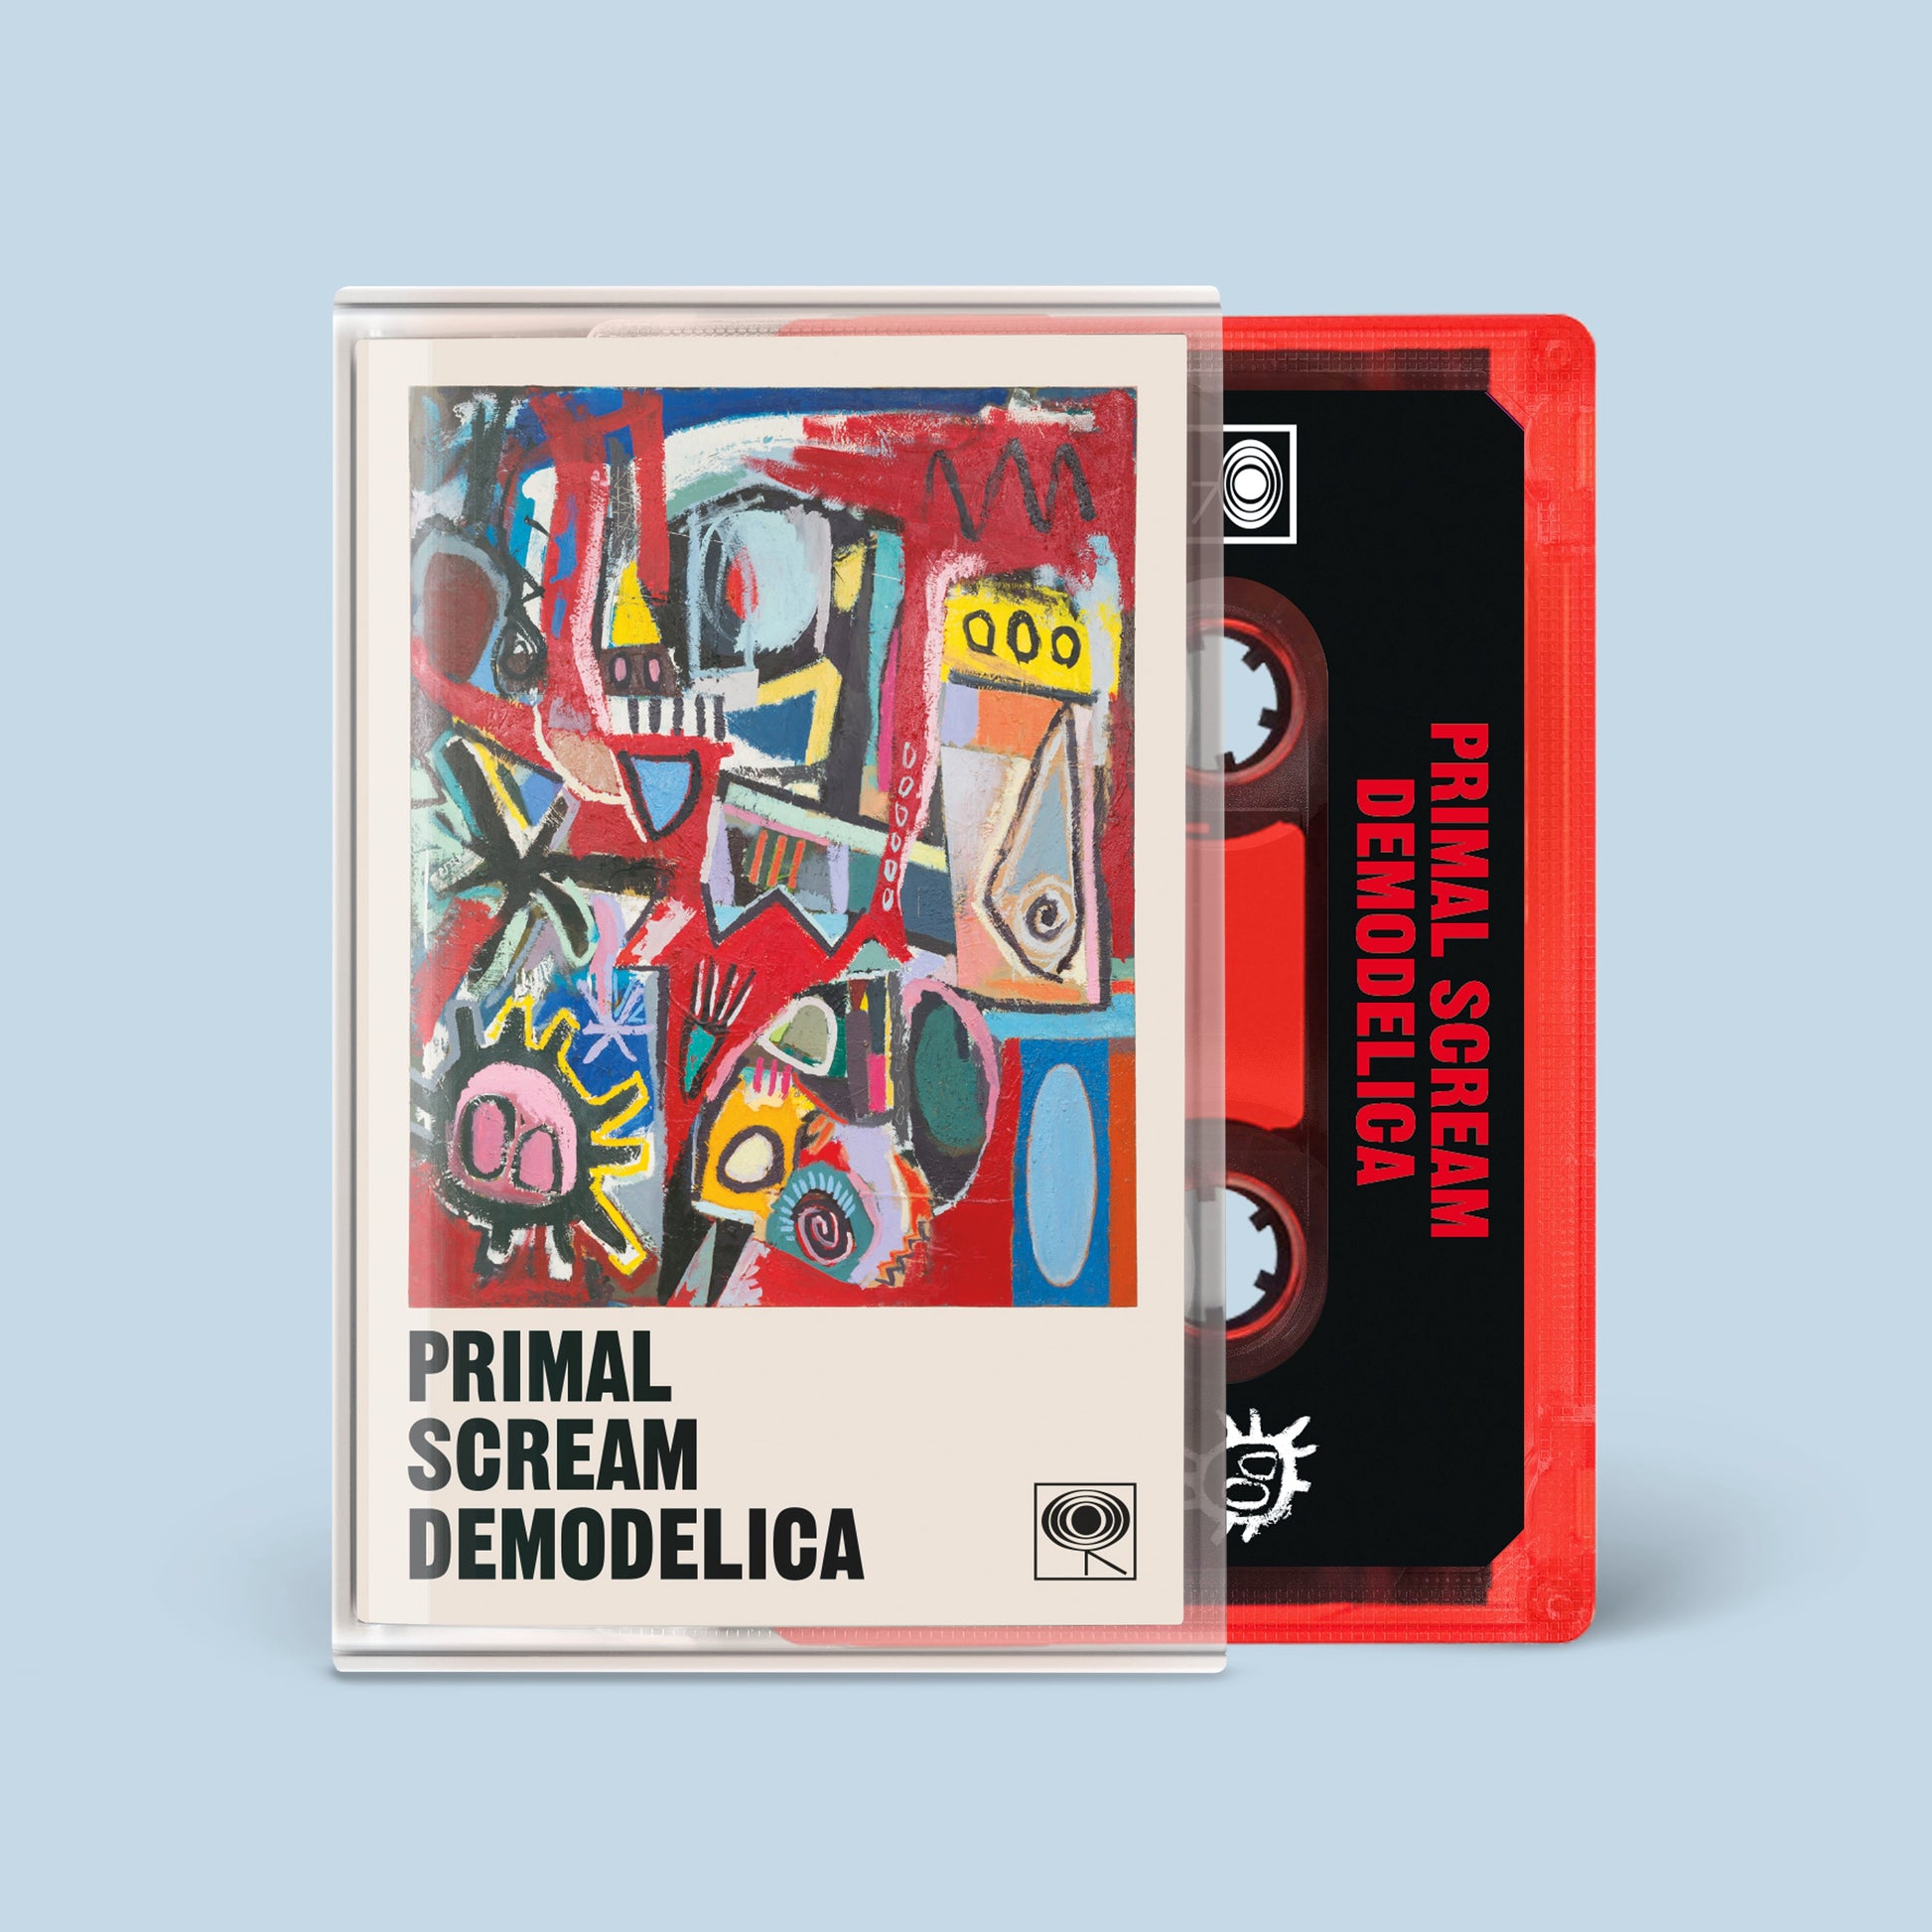 Demodelica (Cassette)